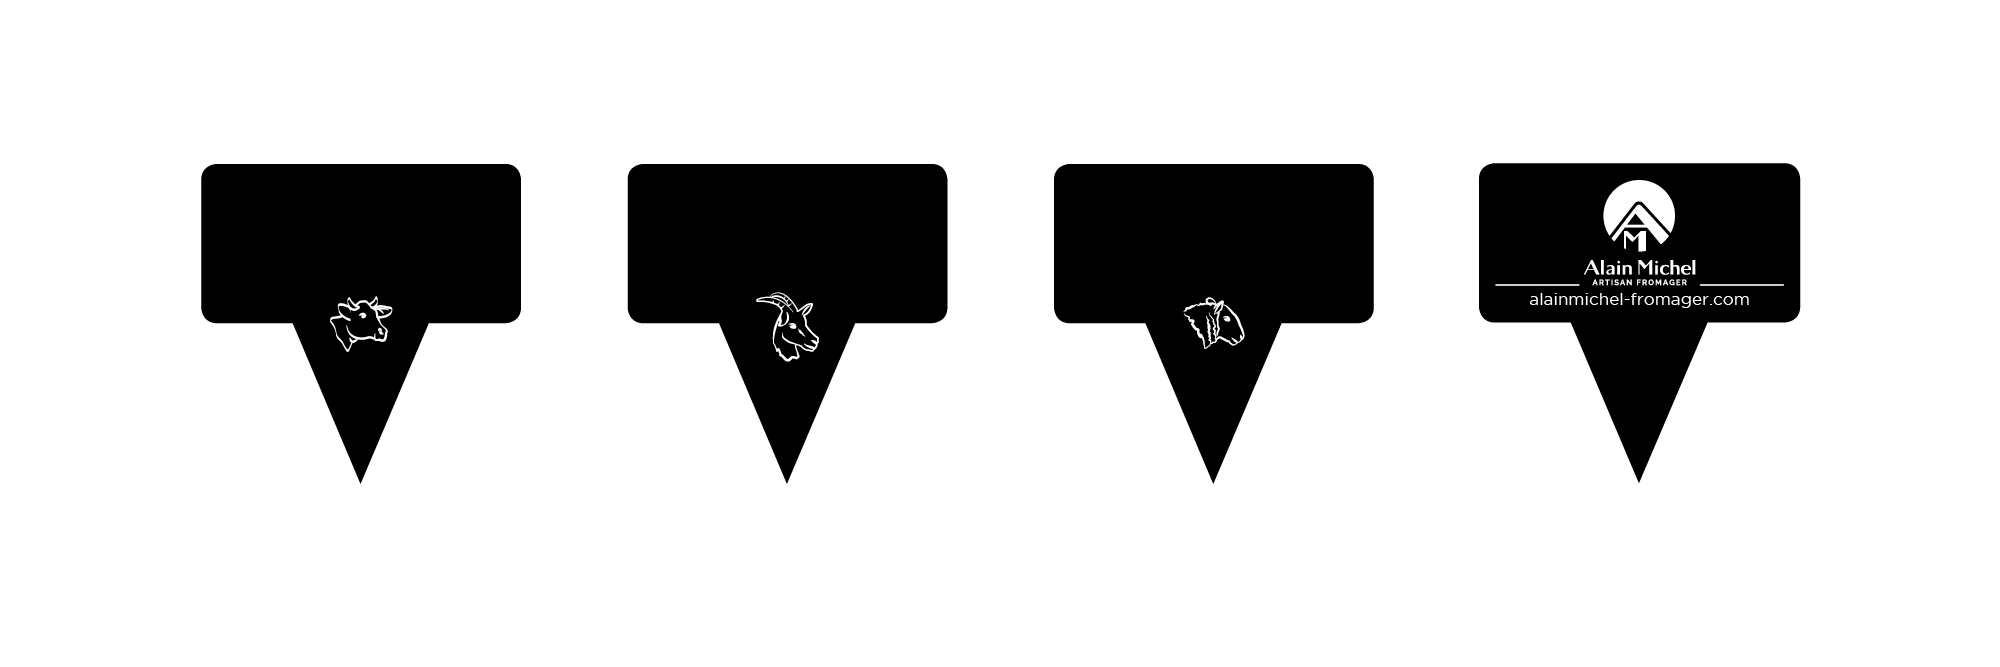 Visuels pics plateaux noirs personnalisés avec tête de l'animal au recto et coordonnées au verso